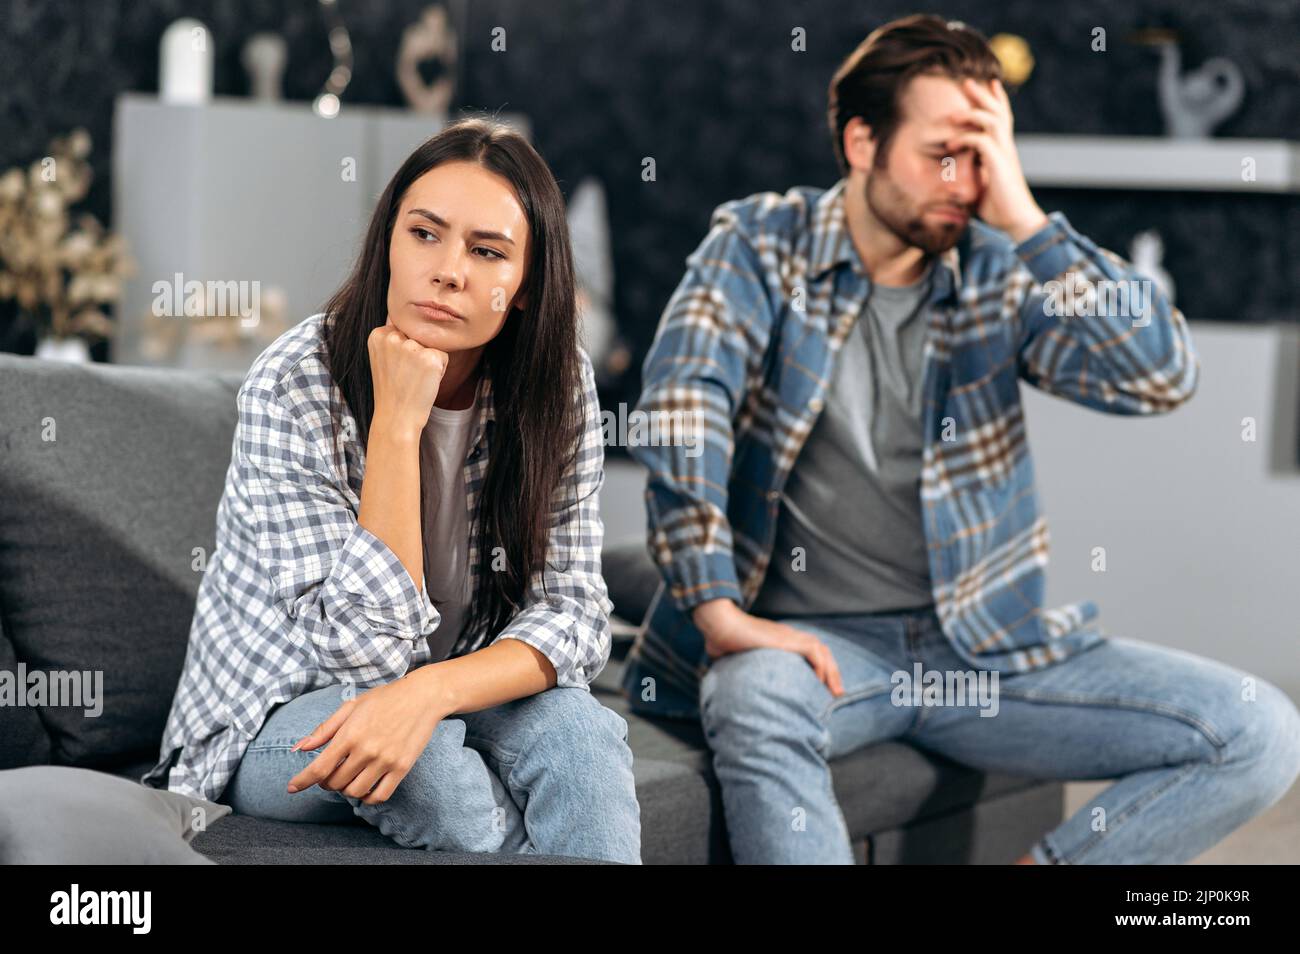 Ein Streit in der Beziehung eines kaukasischen Paares, die Ehepartner zanken über Meinungsverschiedenheiten, sie sitzen auf einem Sofa im Wohnzimmer, sie werden gegenseitig beleidigt, sie schauen in verschiedene Richtungen Stockfoto